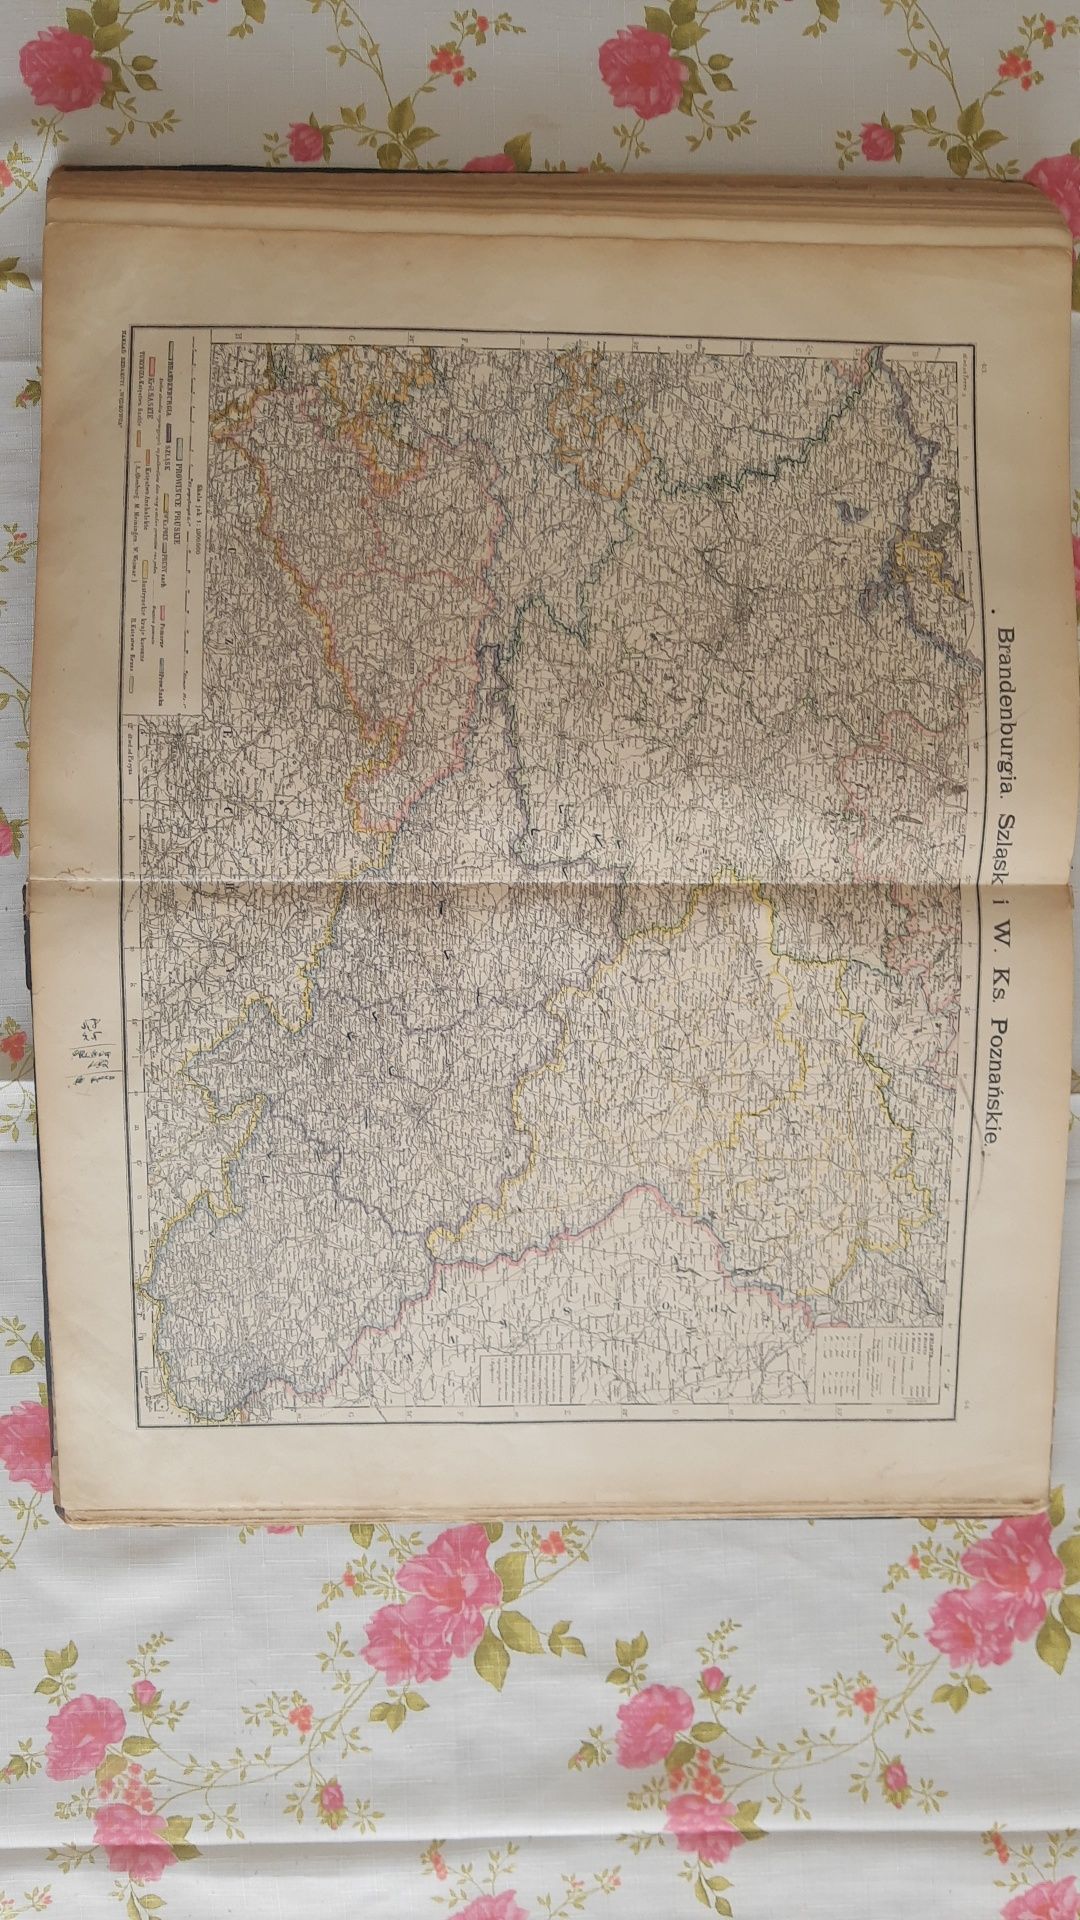 Wielki Atlas Geograficzny W.Nałkowskiego i A. Świętochowskiego